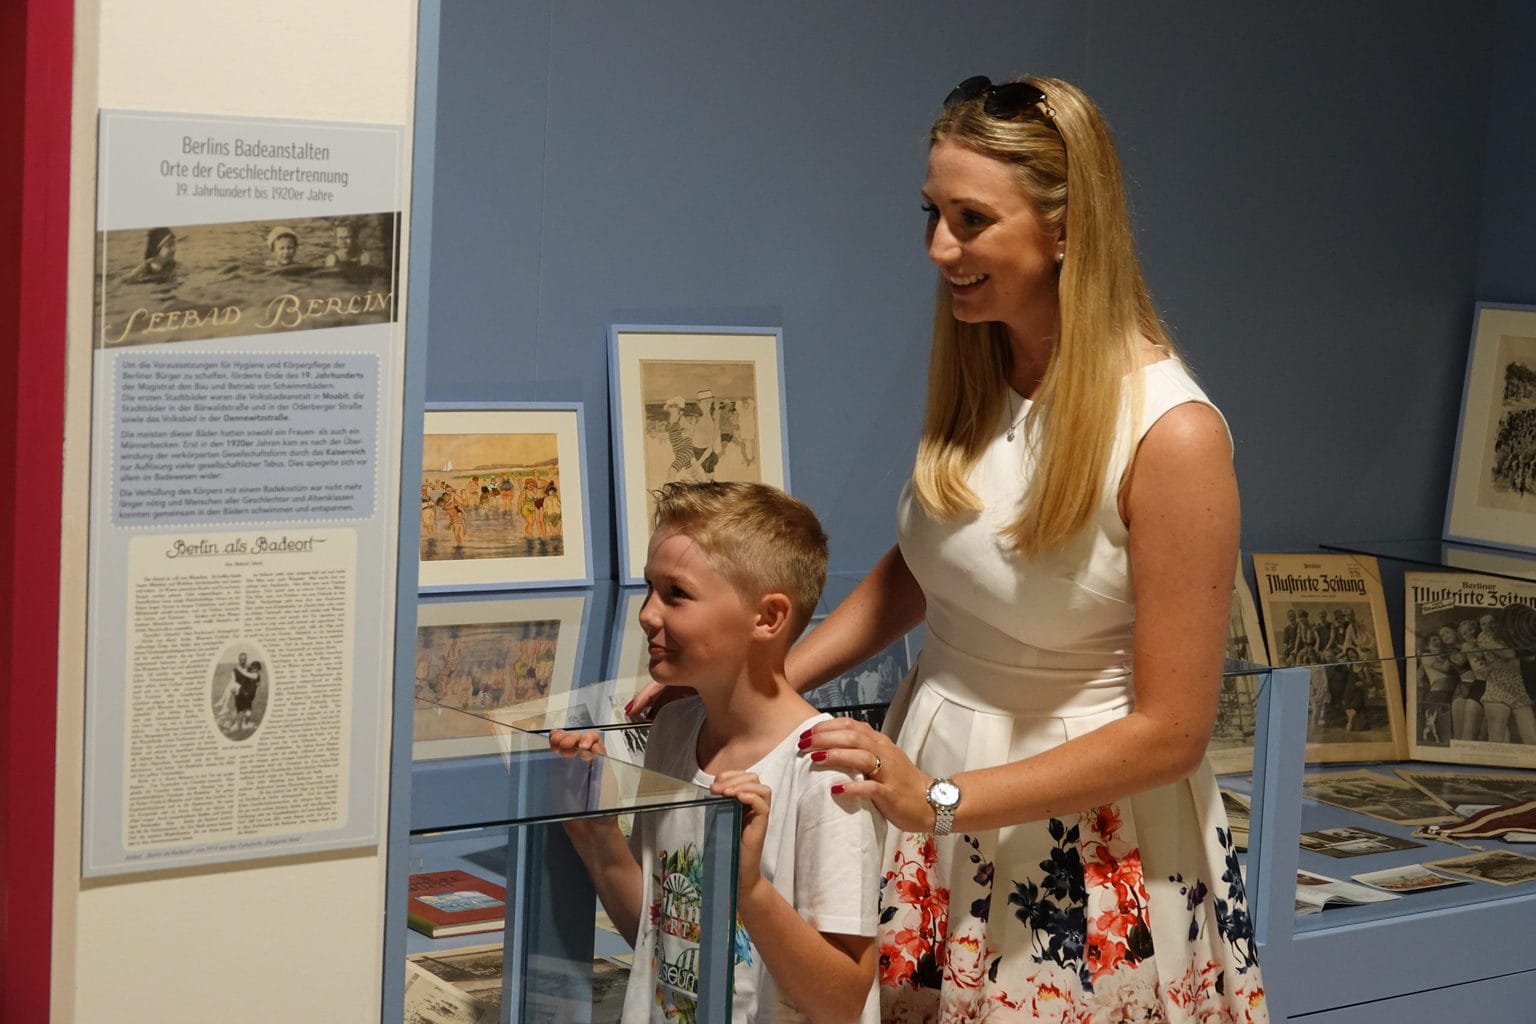 Mutter und Kind blicken interessiert auf die Exponate im Bikini Art Museum